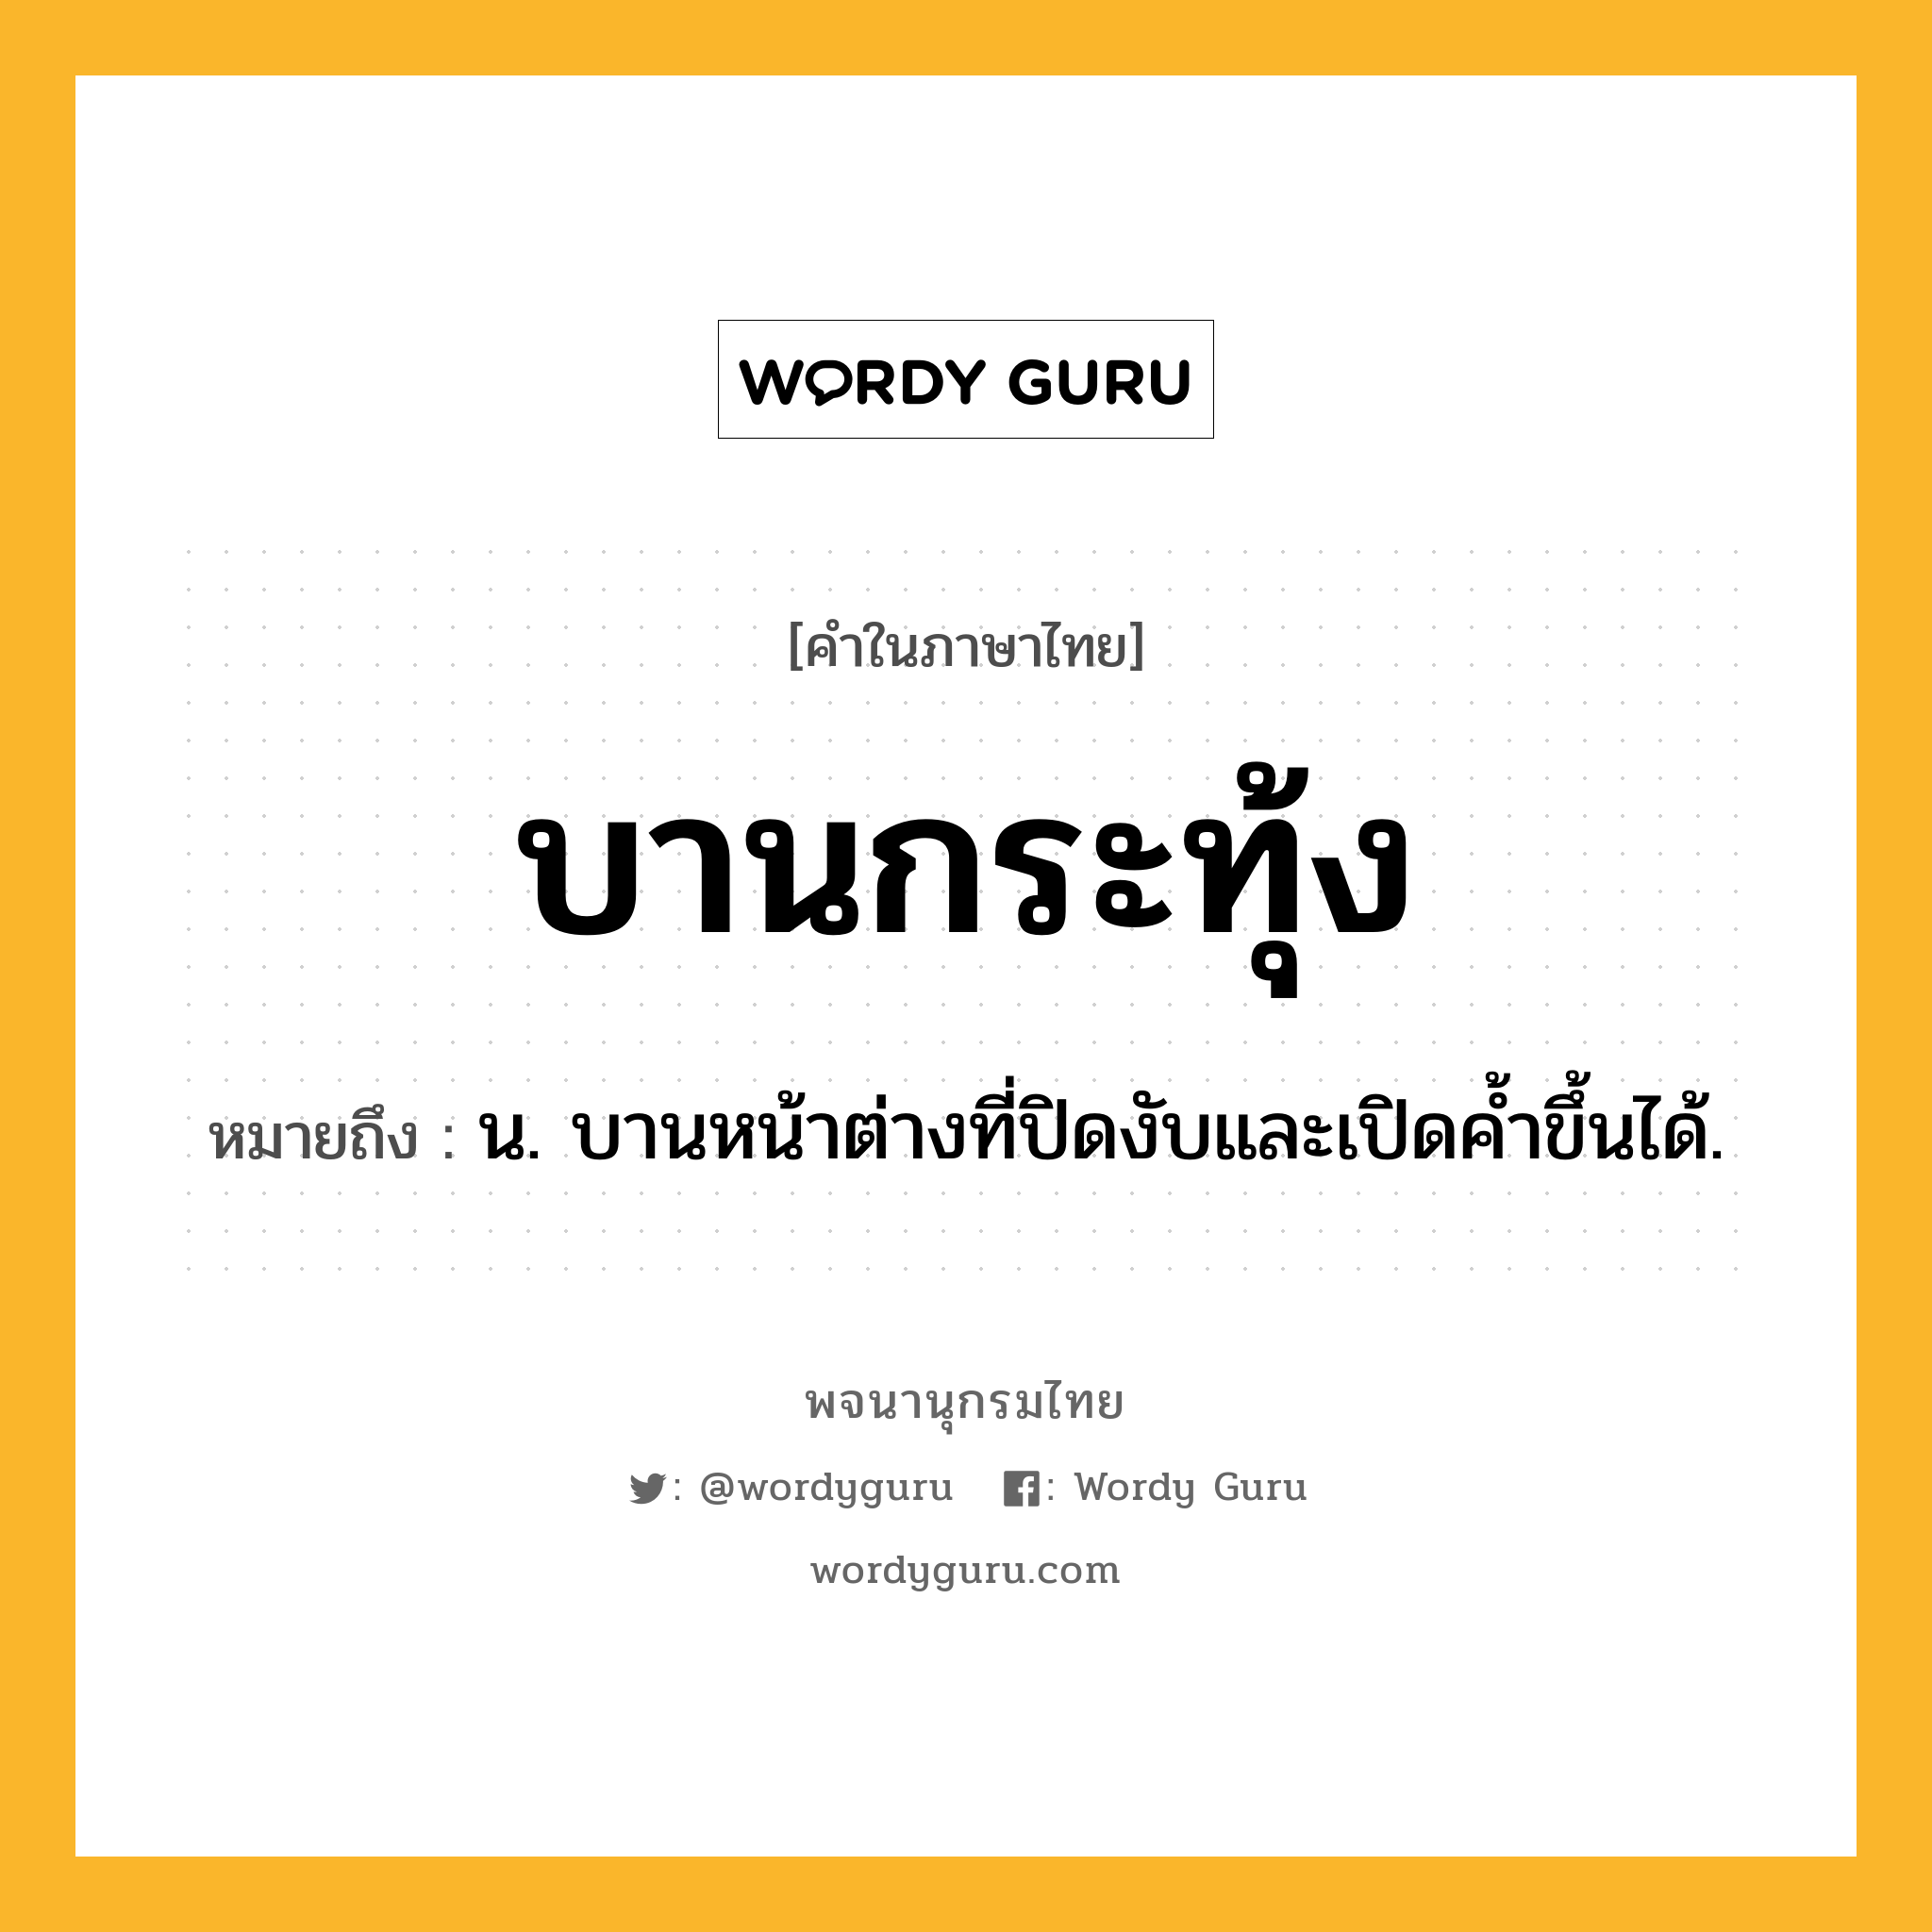 บานกระทุ้ง หมายถึงอะไร?, คำในภาษาไทย บานกระทุ้ง หมายถึง น. บานหน้าต่างที่ปิดงับและเปิดค้ำขึ้นได้.